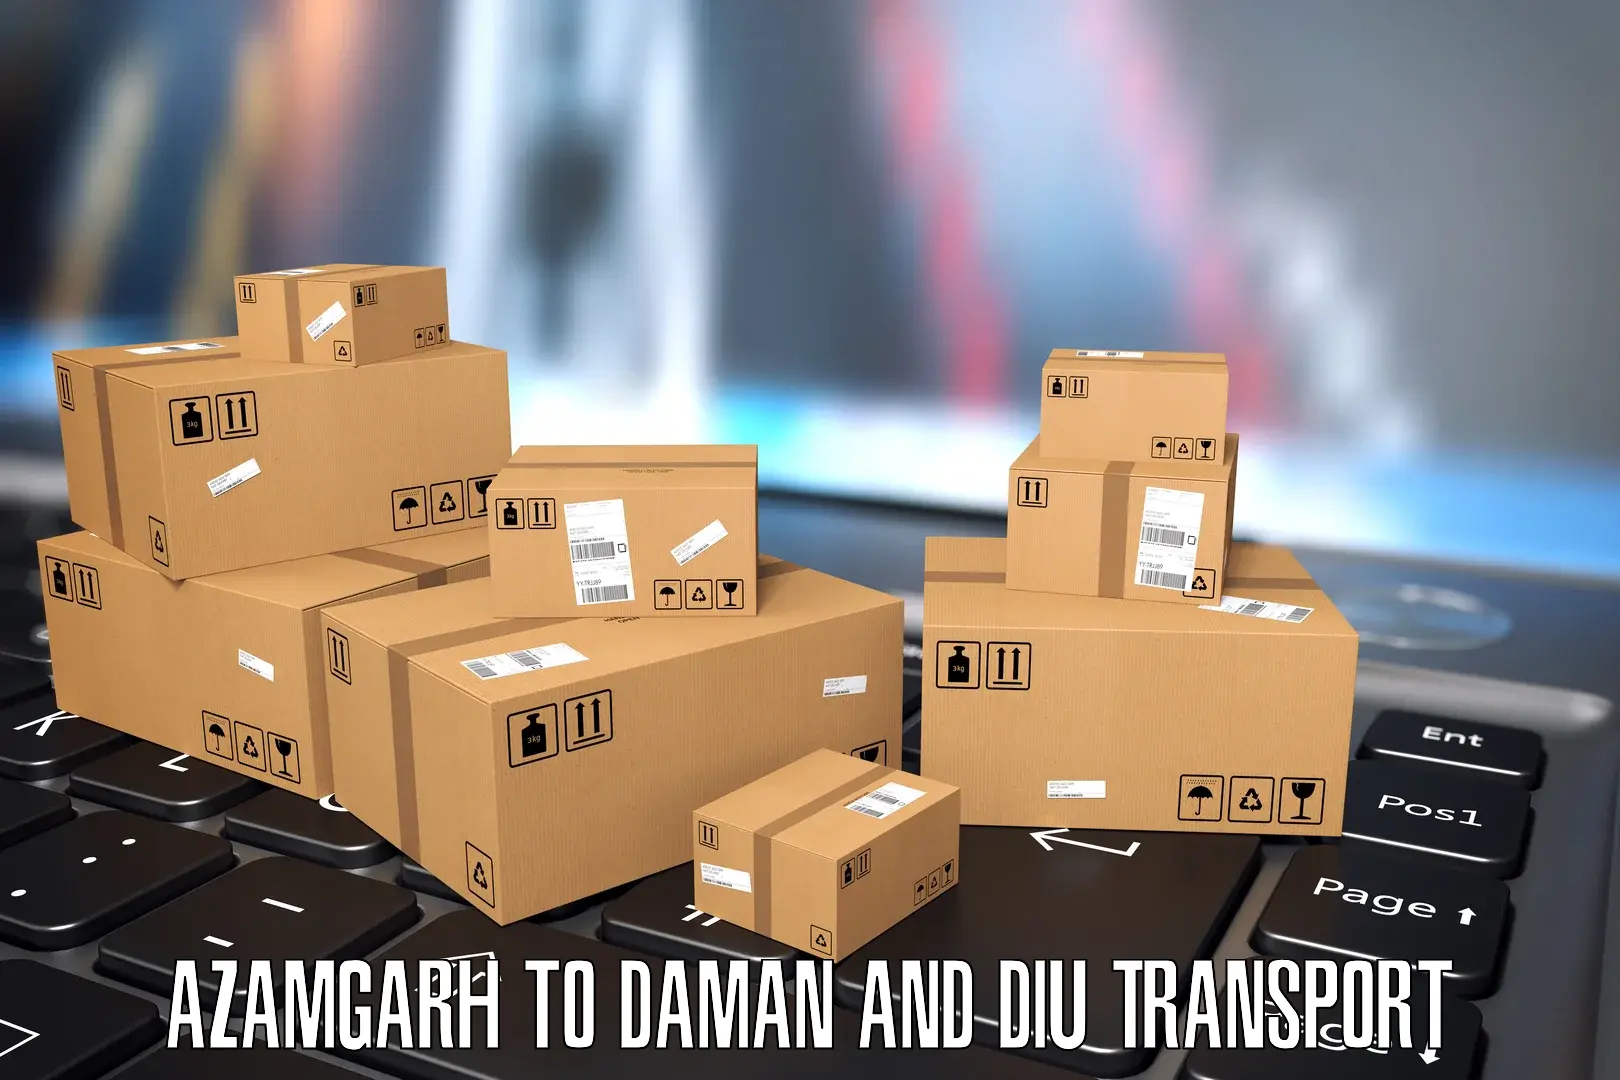 Daily transport service Azamgarh to Daman and Diu